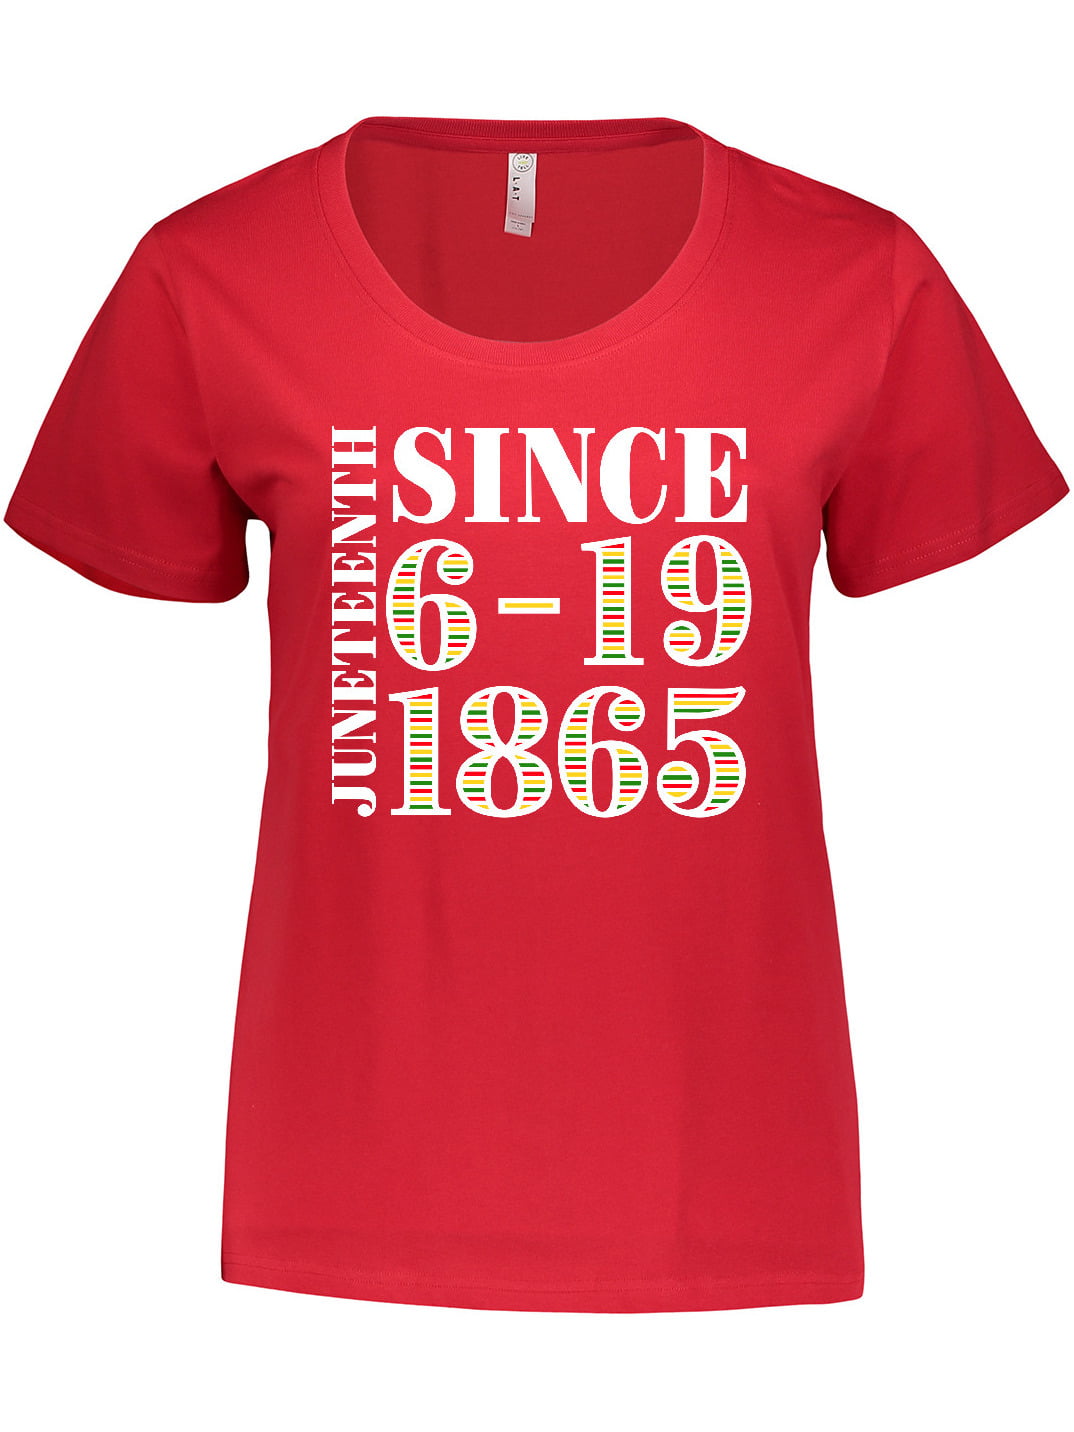 Juneteenth 1865 Adult Tri-Blend Long Sleeve T-Shirt